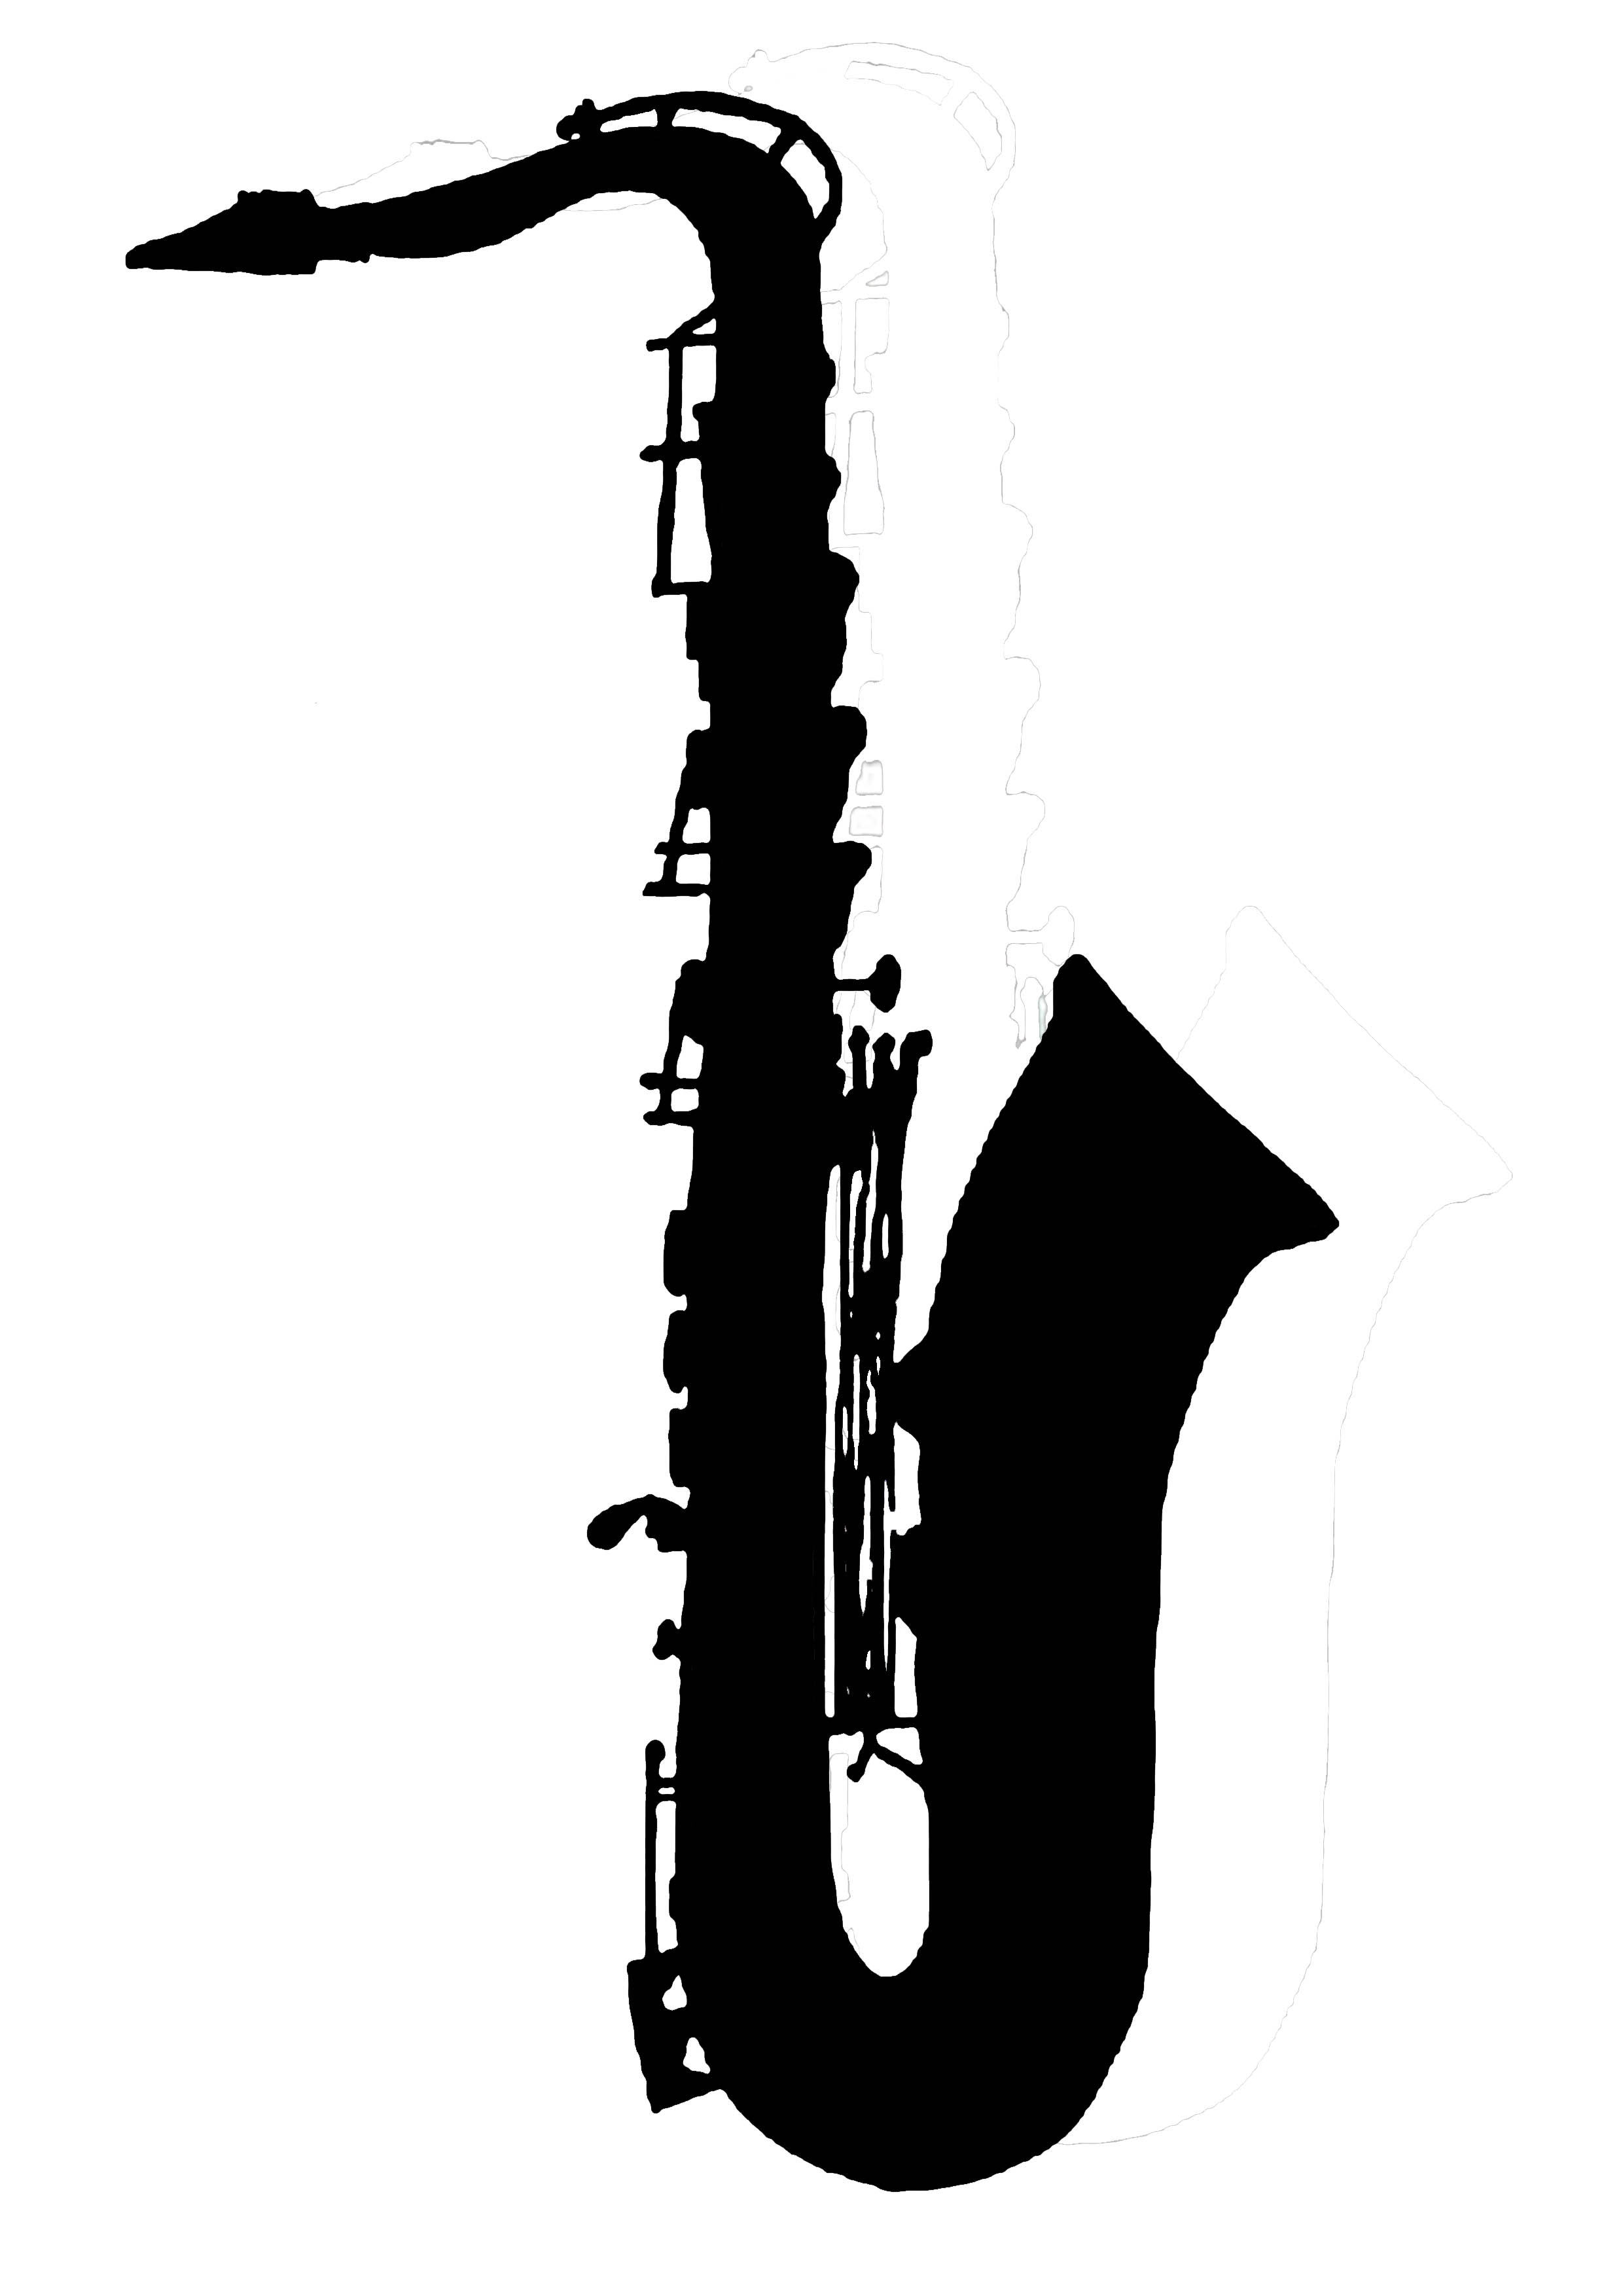 Saxophone jahaziel. Саксофон. Саксофон силуэт. Саксофон вектор. Саксофон черно белый.